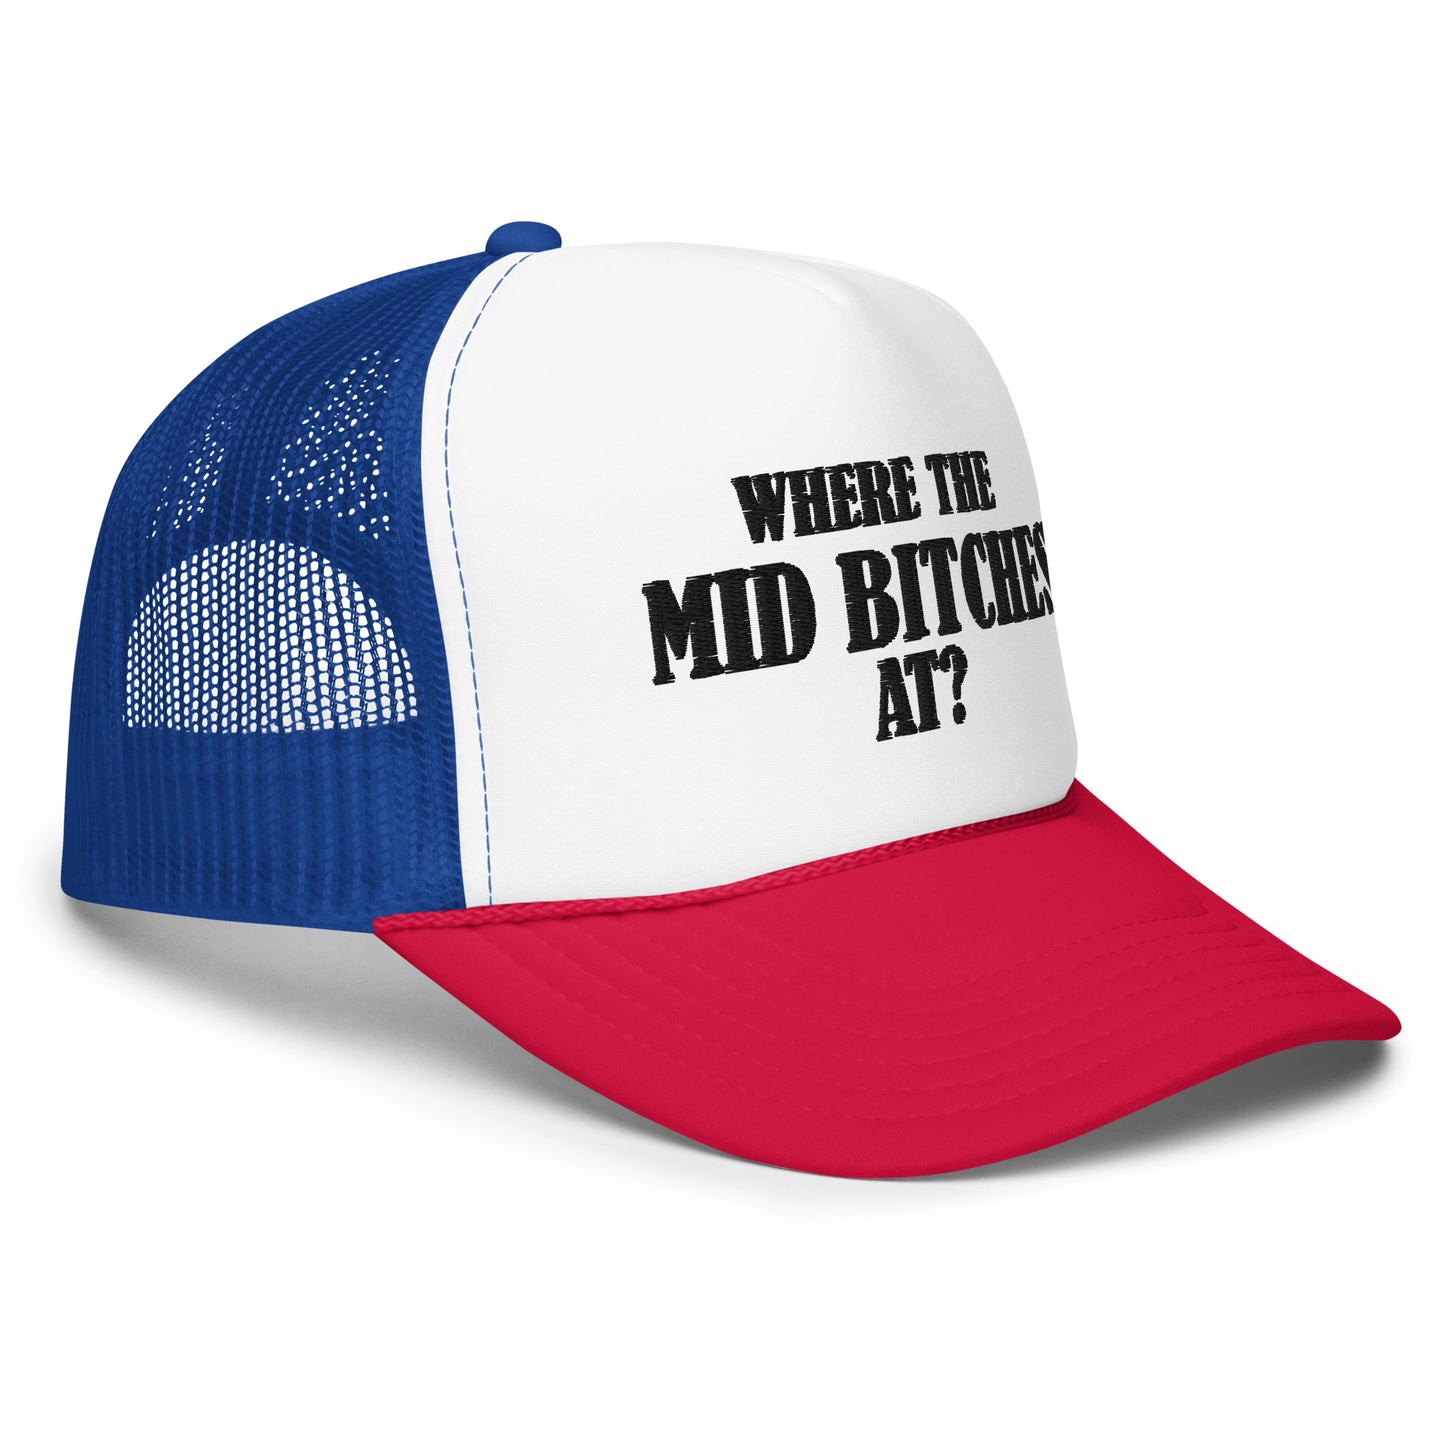 Mid Bitches Foam Trucker Hat